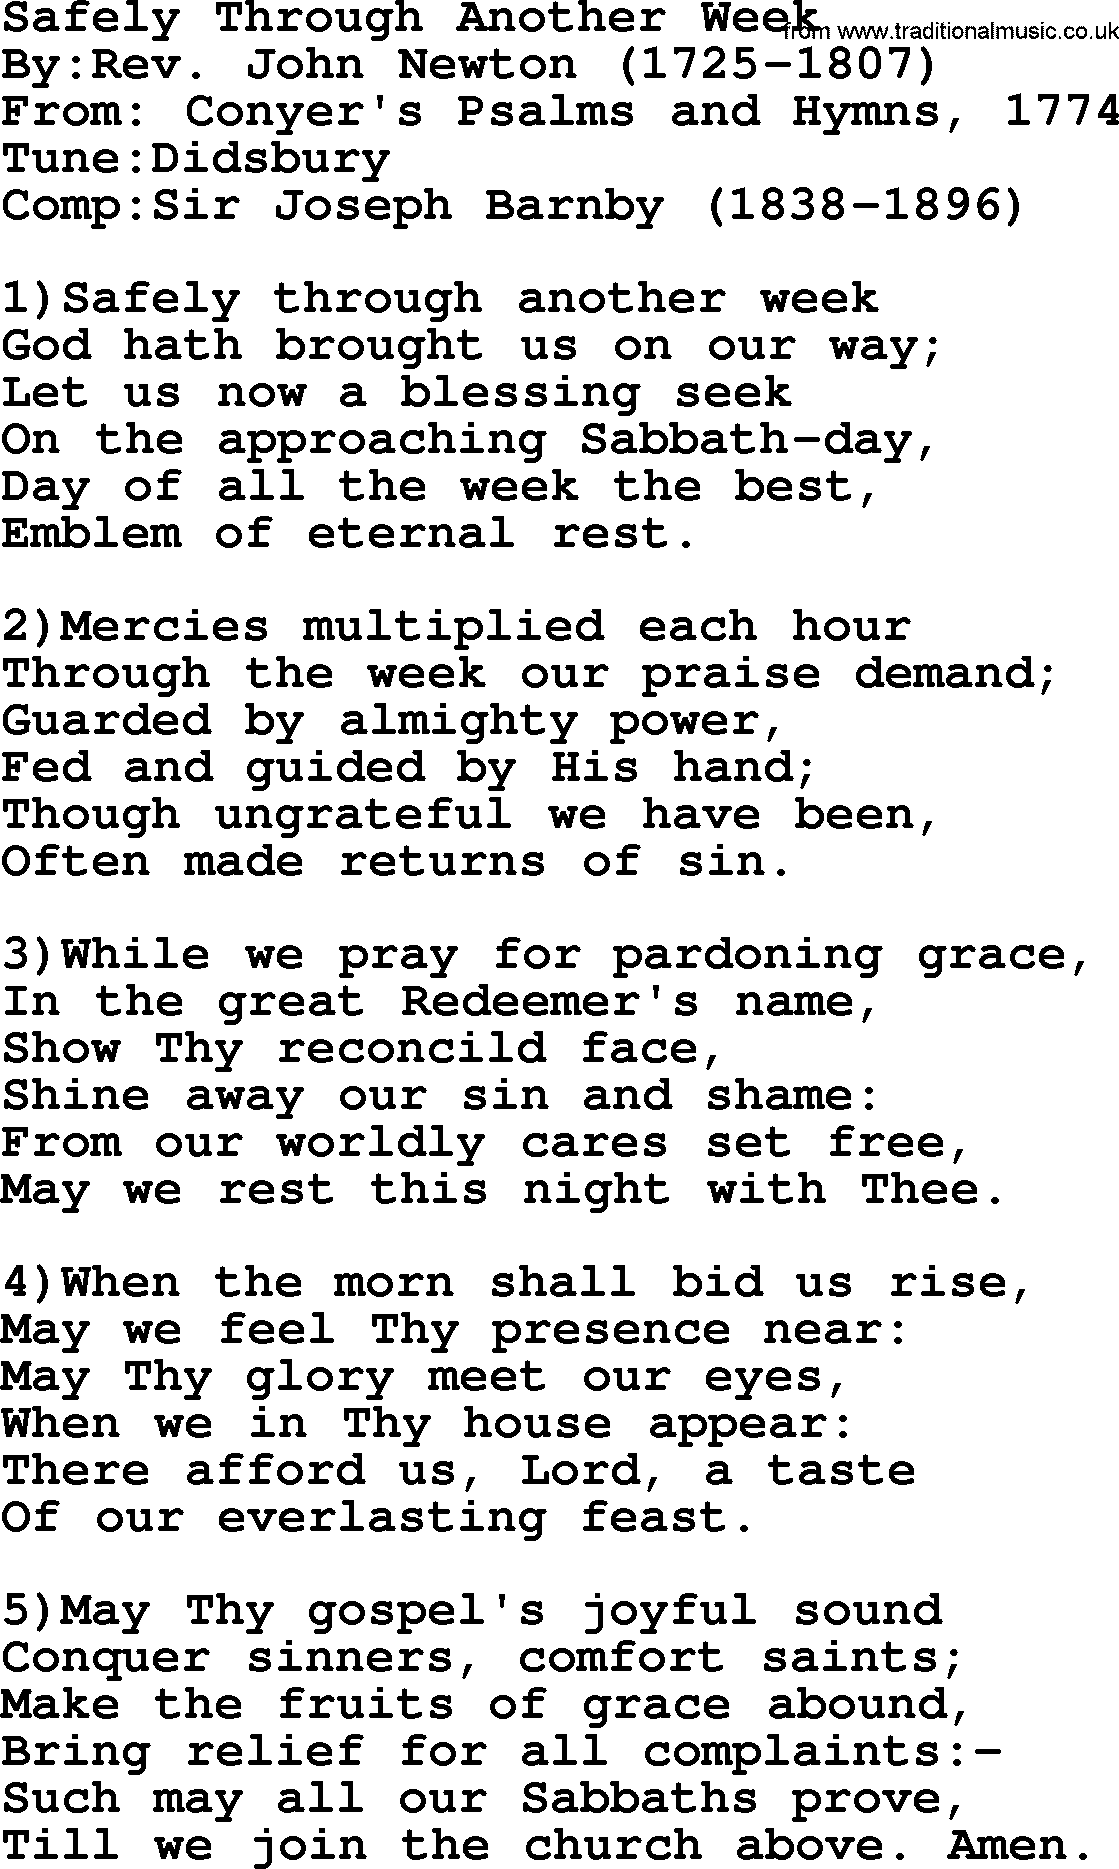 Methodist Hymn: Safely Through Another Week, lyrics